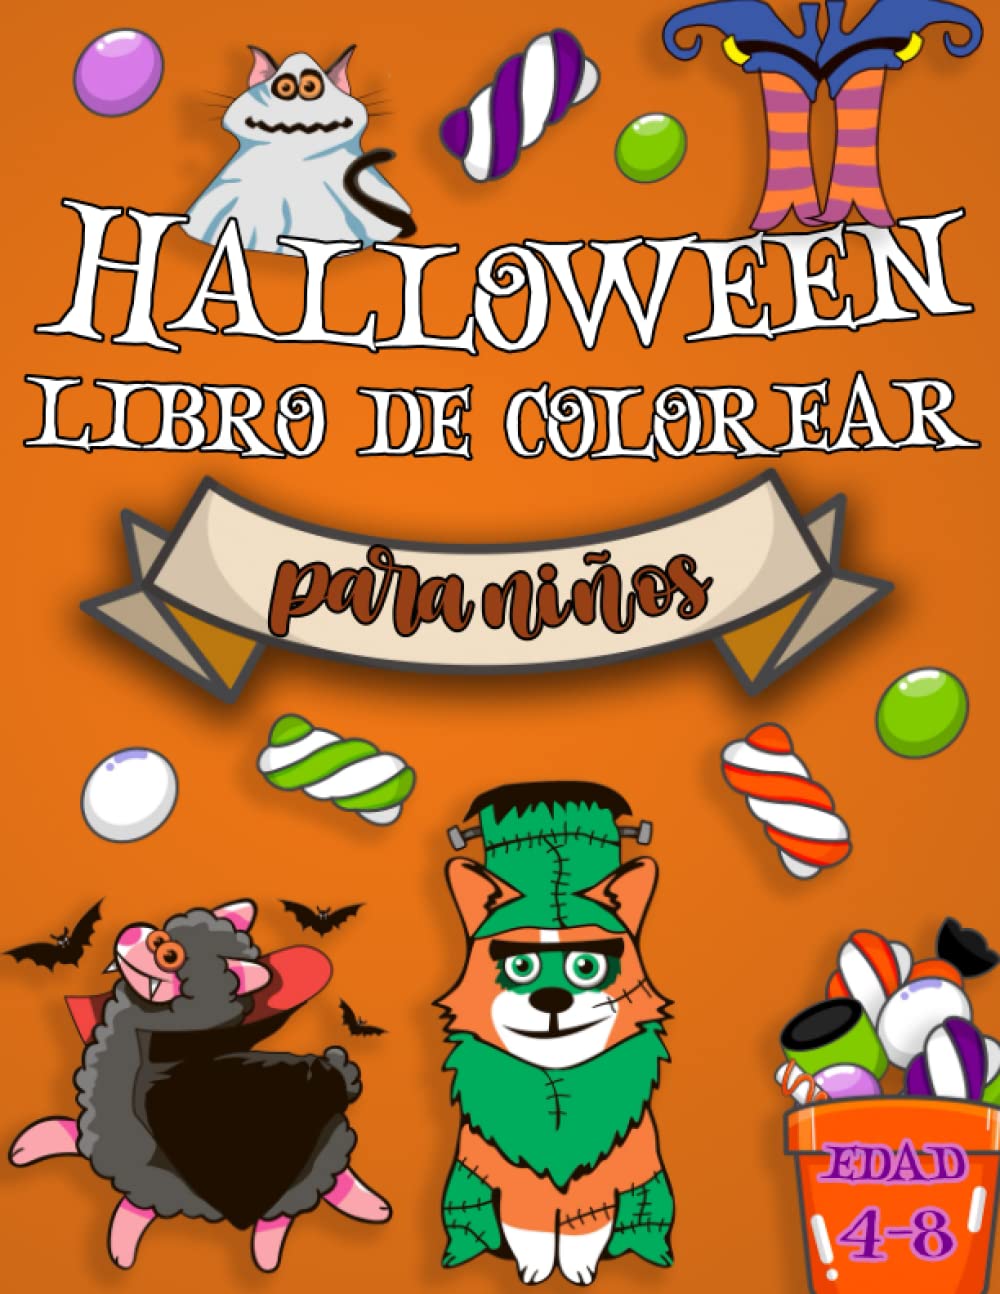 Libro: Halloween - Libro de colorear para niños de edad 4-8 años por David & Sons